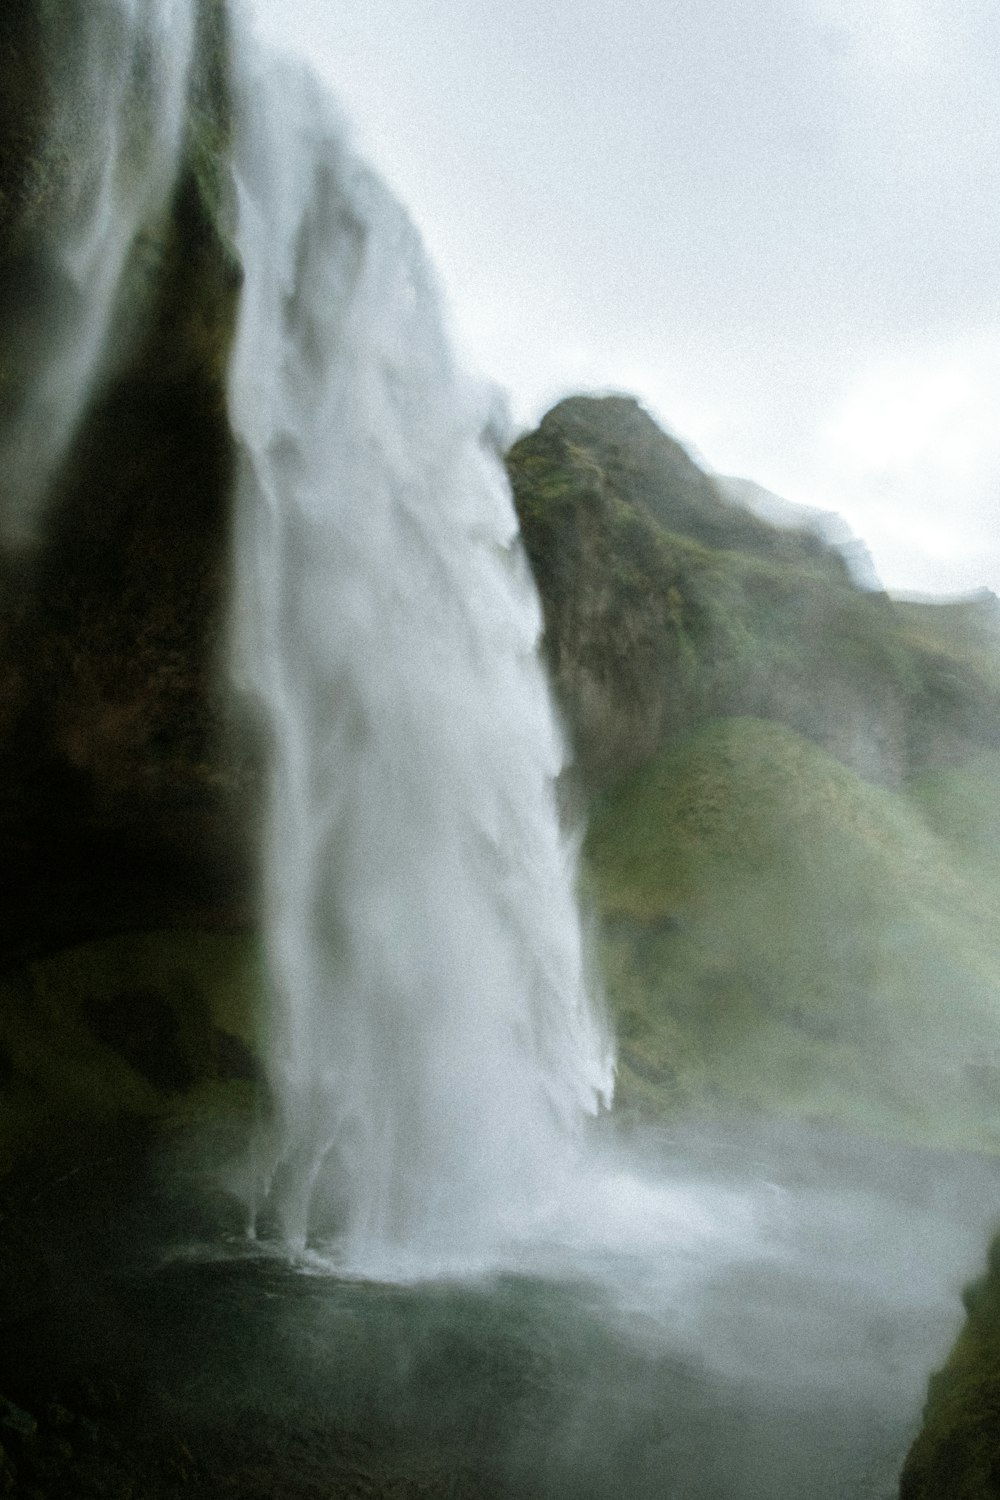 Una gran cascada está vertiendo agua en un cuerpo de agua